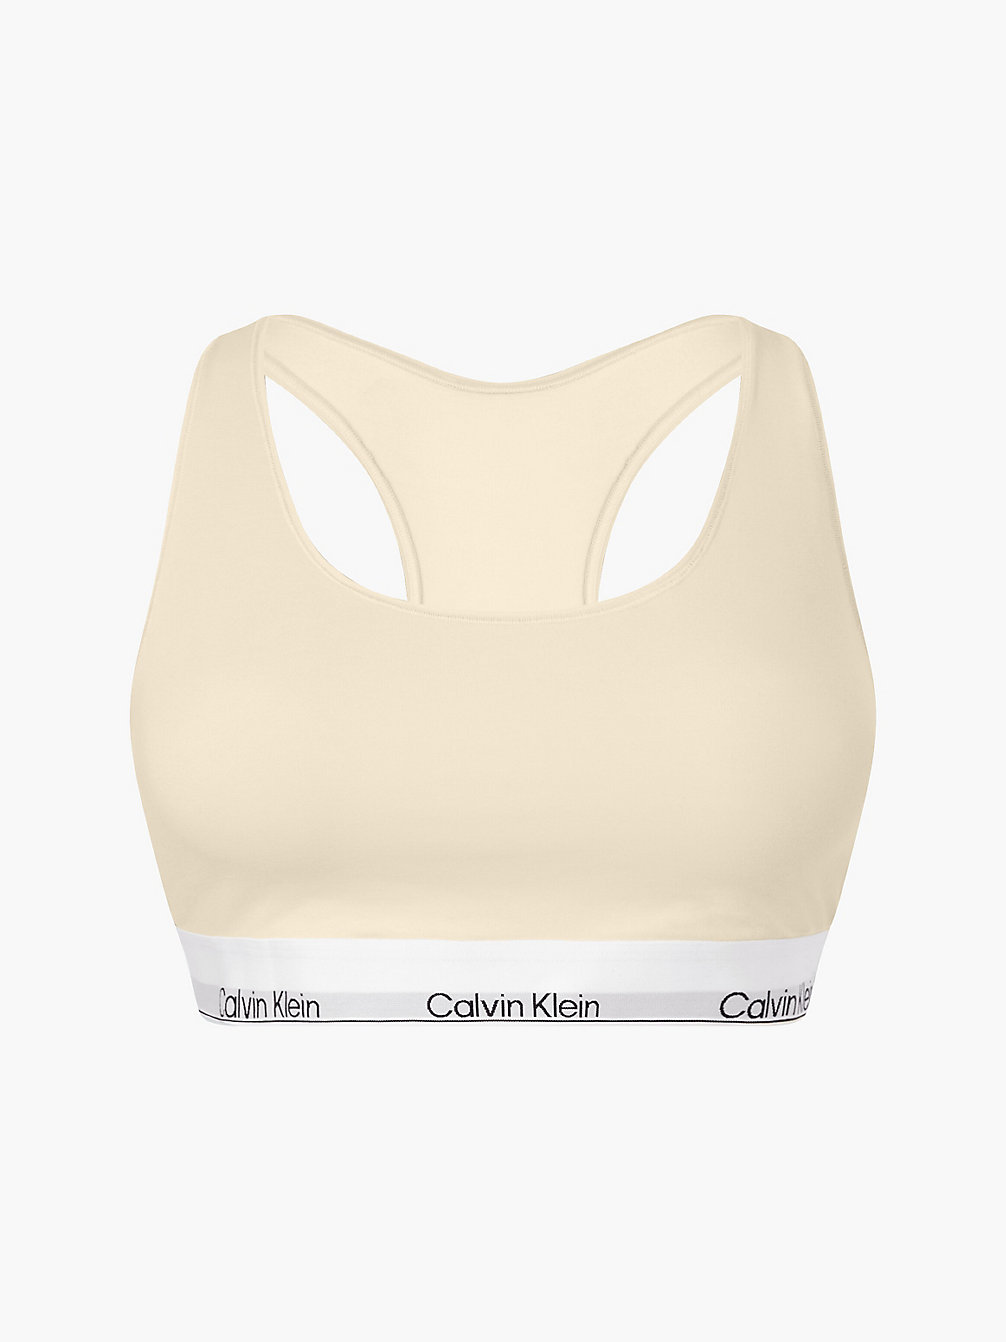 STONE Plus Size Bralette - Modern Cotton undefined women Calvin Klein